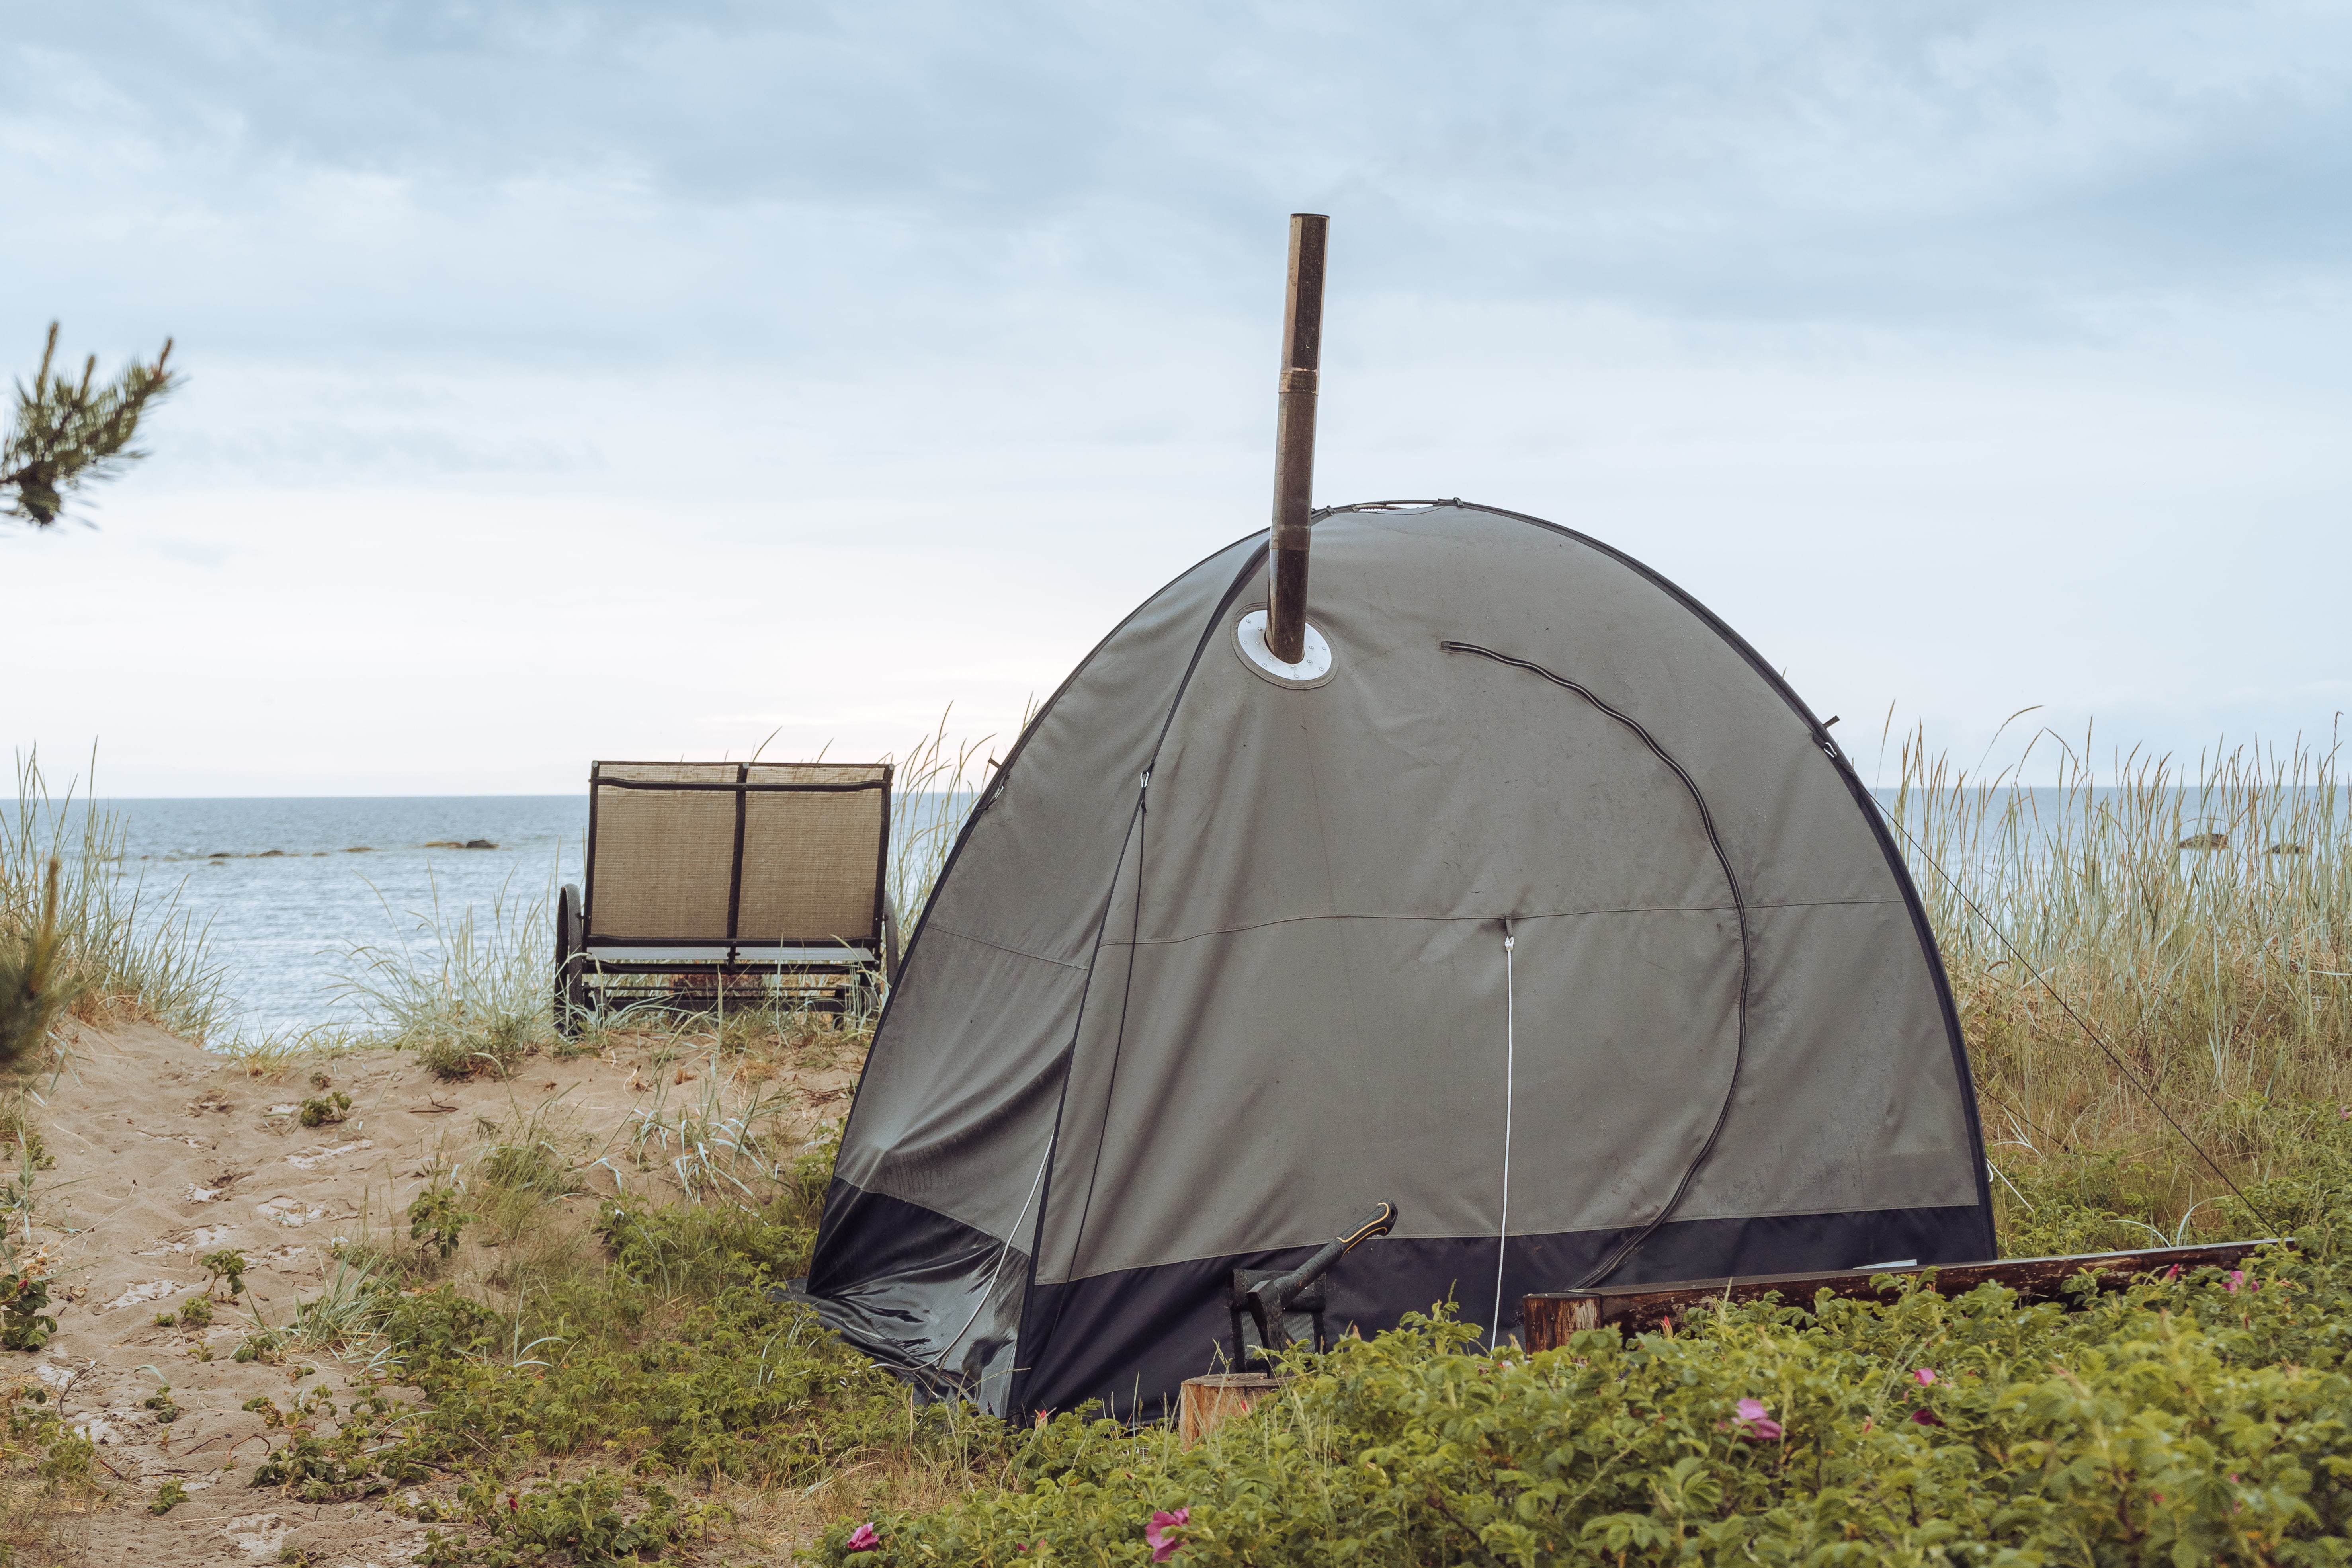 Tent sauna on a beach on Aegna Island, Estonia